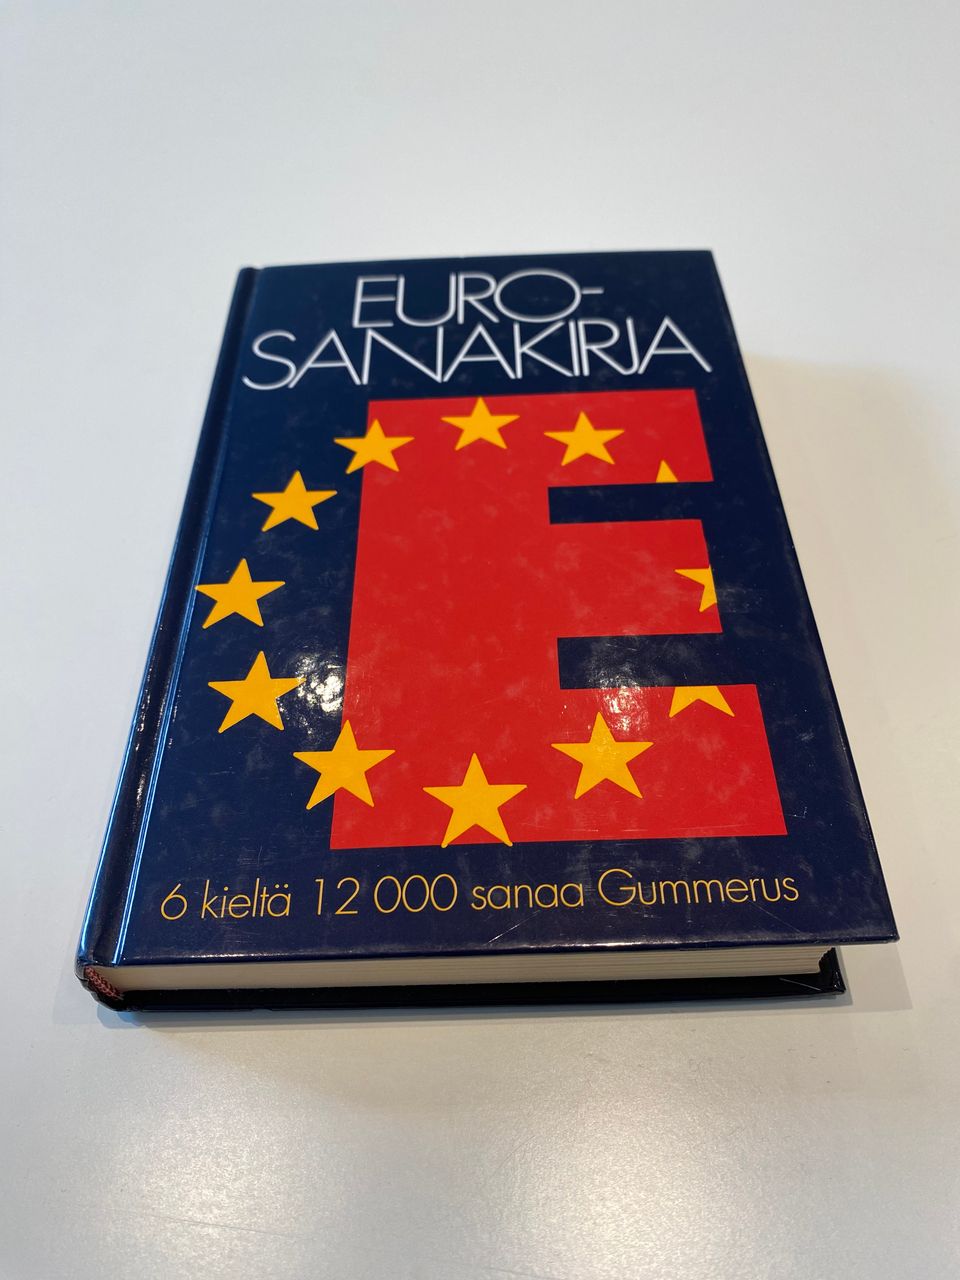 Euro-sanakirja